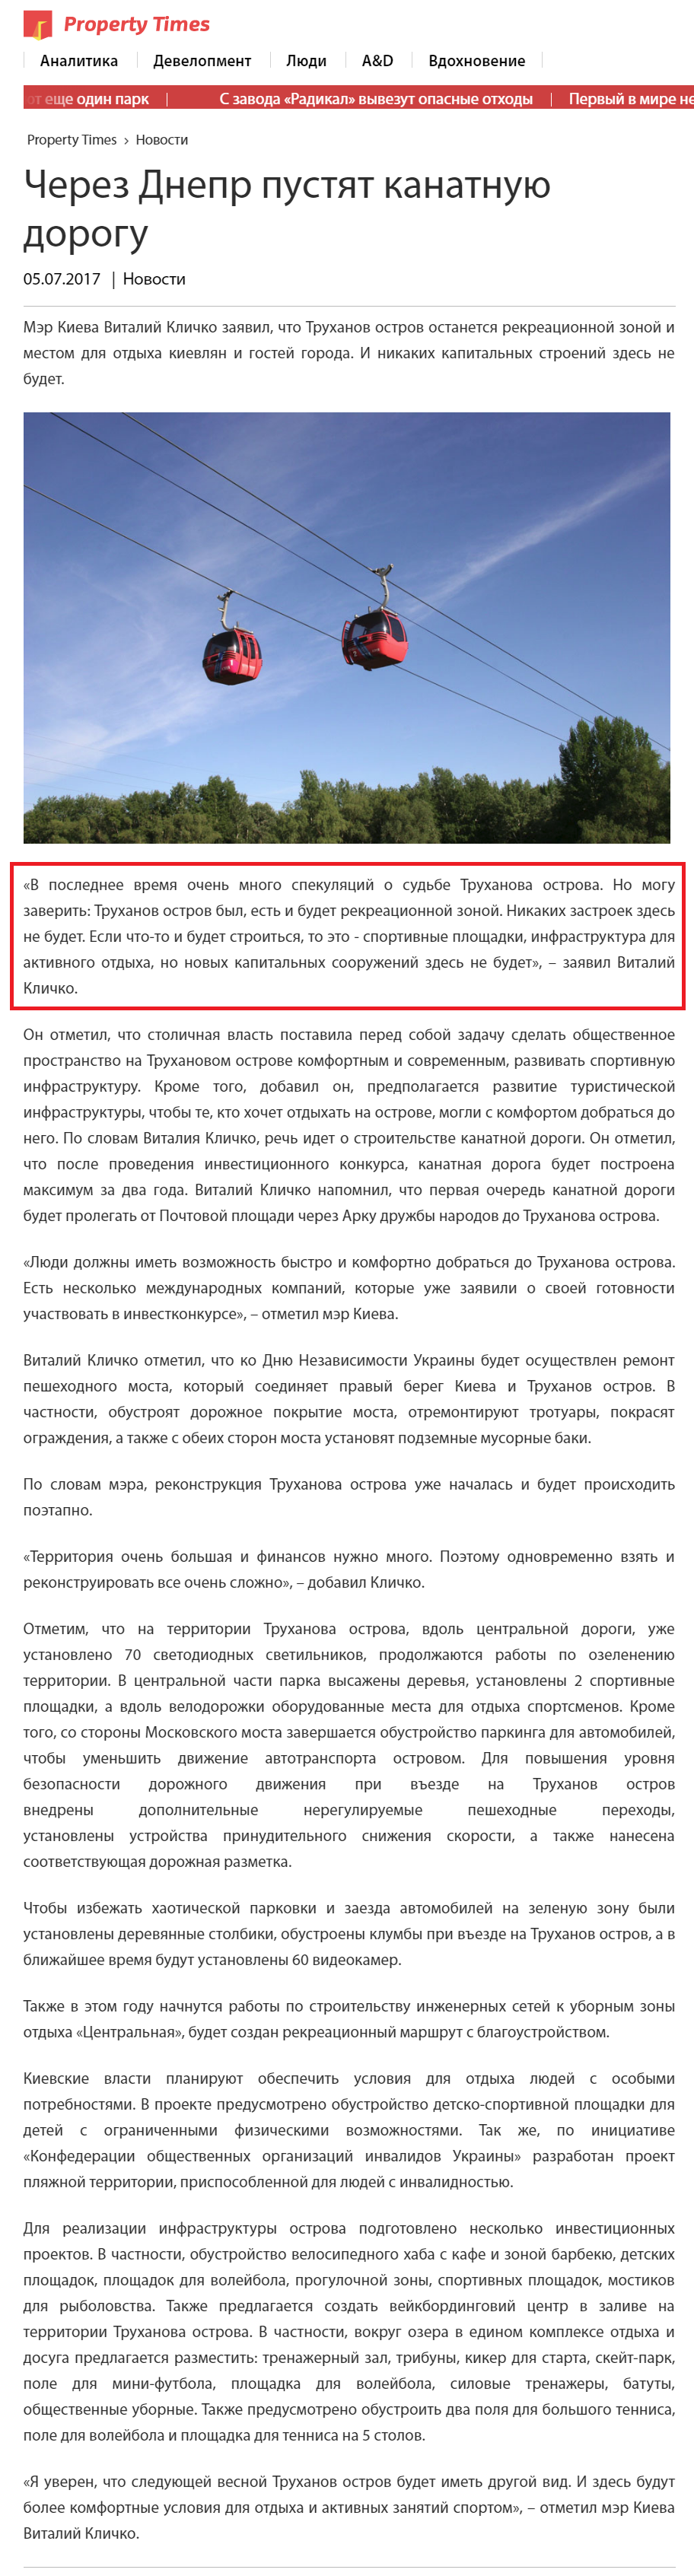 https://propertytimes.com.ua/novosti/cherez_dnepr_pustyat_kanatnuyu_dorogu